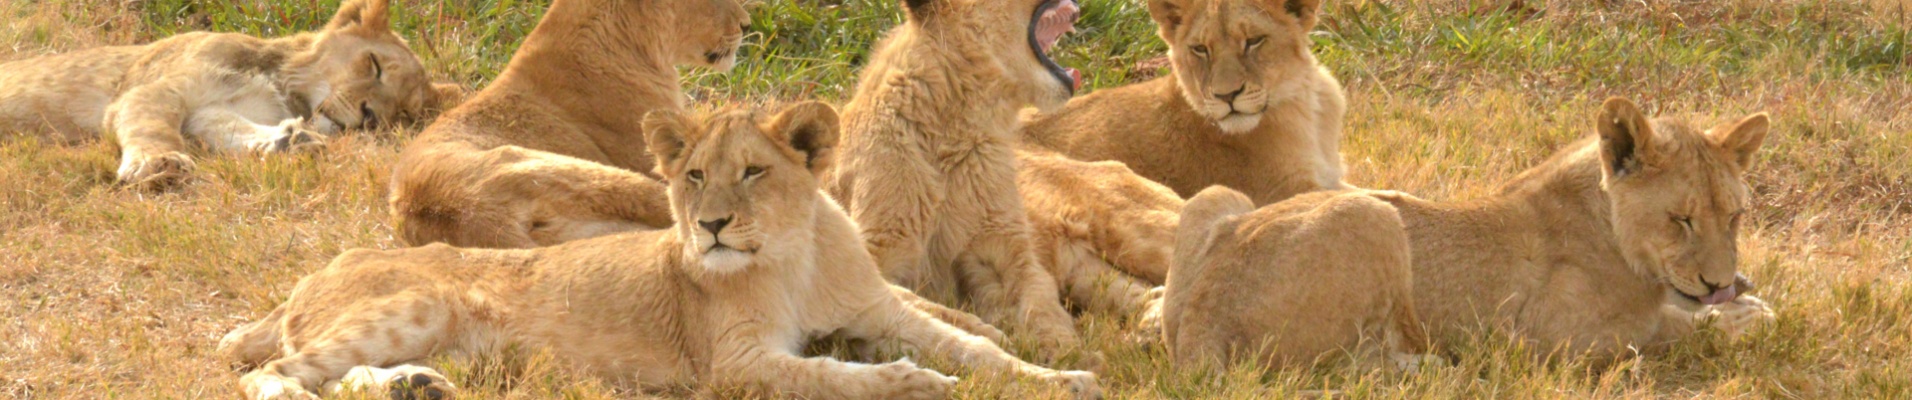 lions-famille-savane-safari-afrique-du-sud